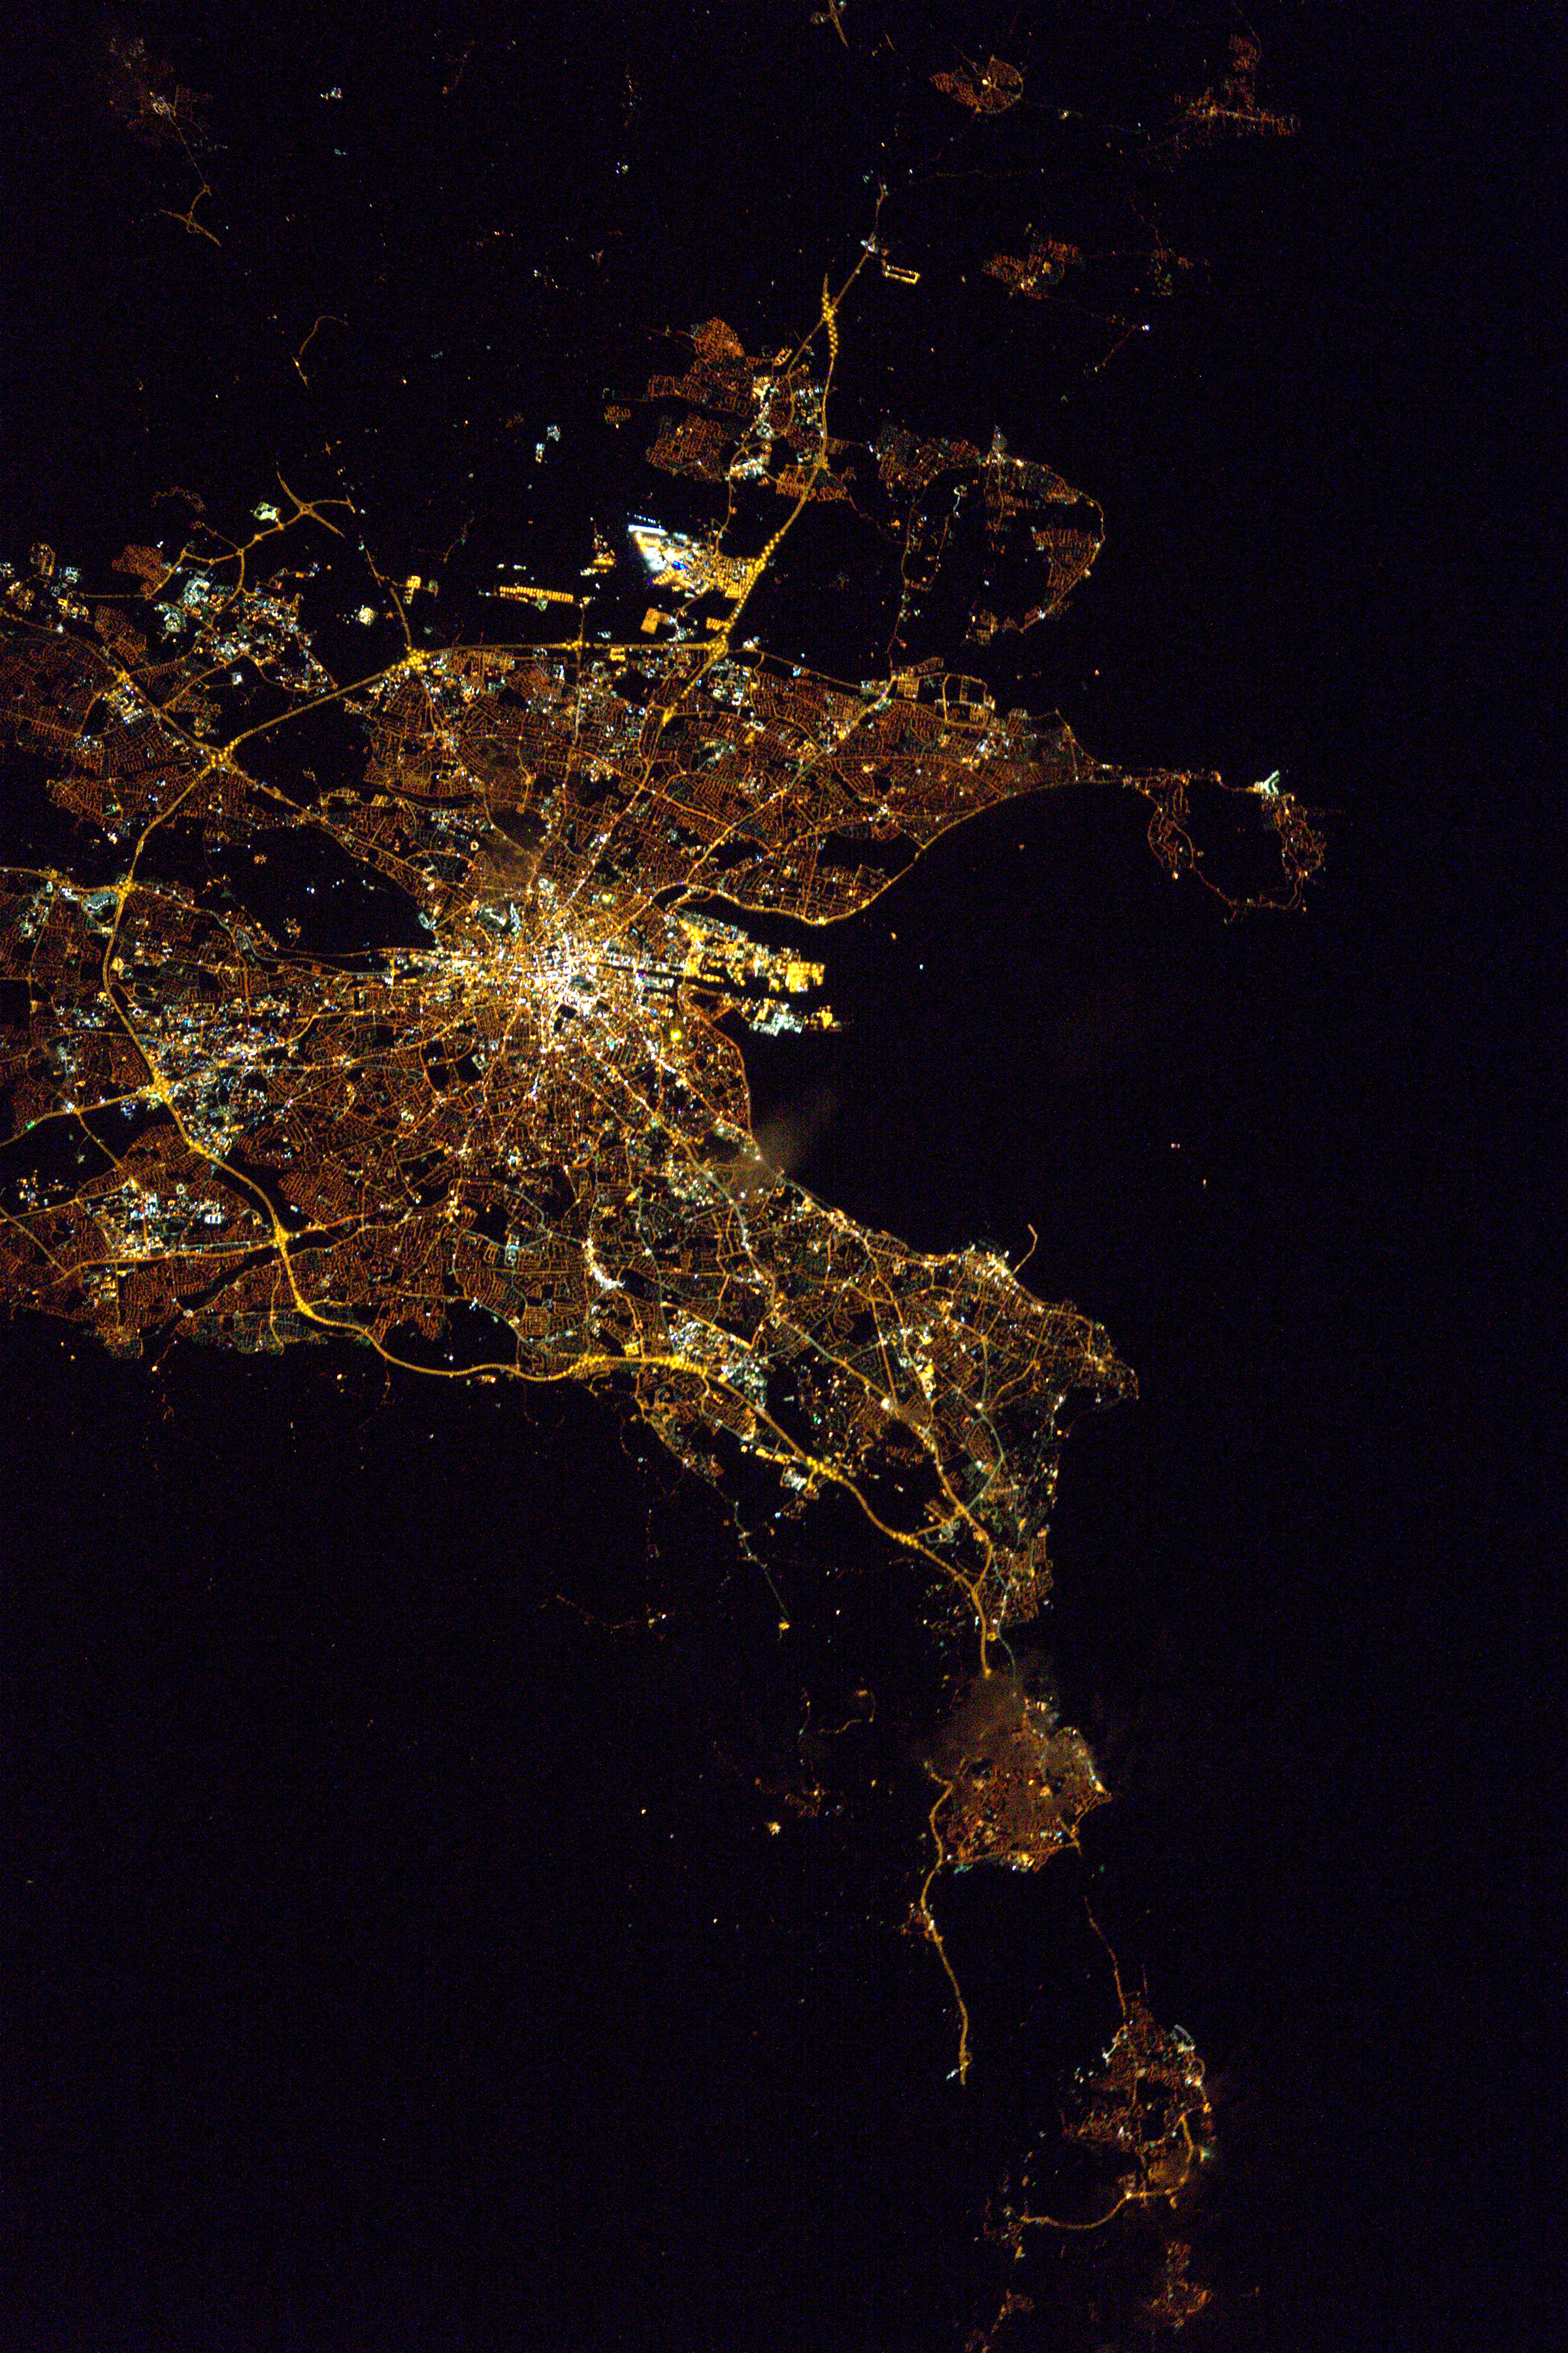 Dublin at Night | NASA